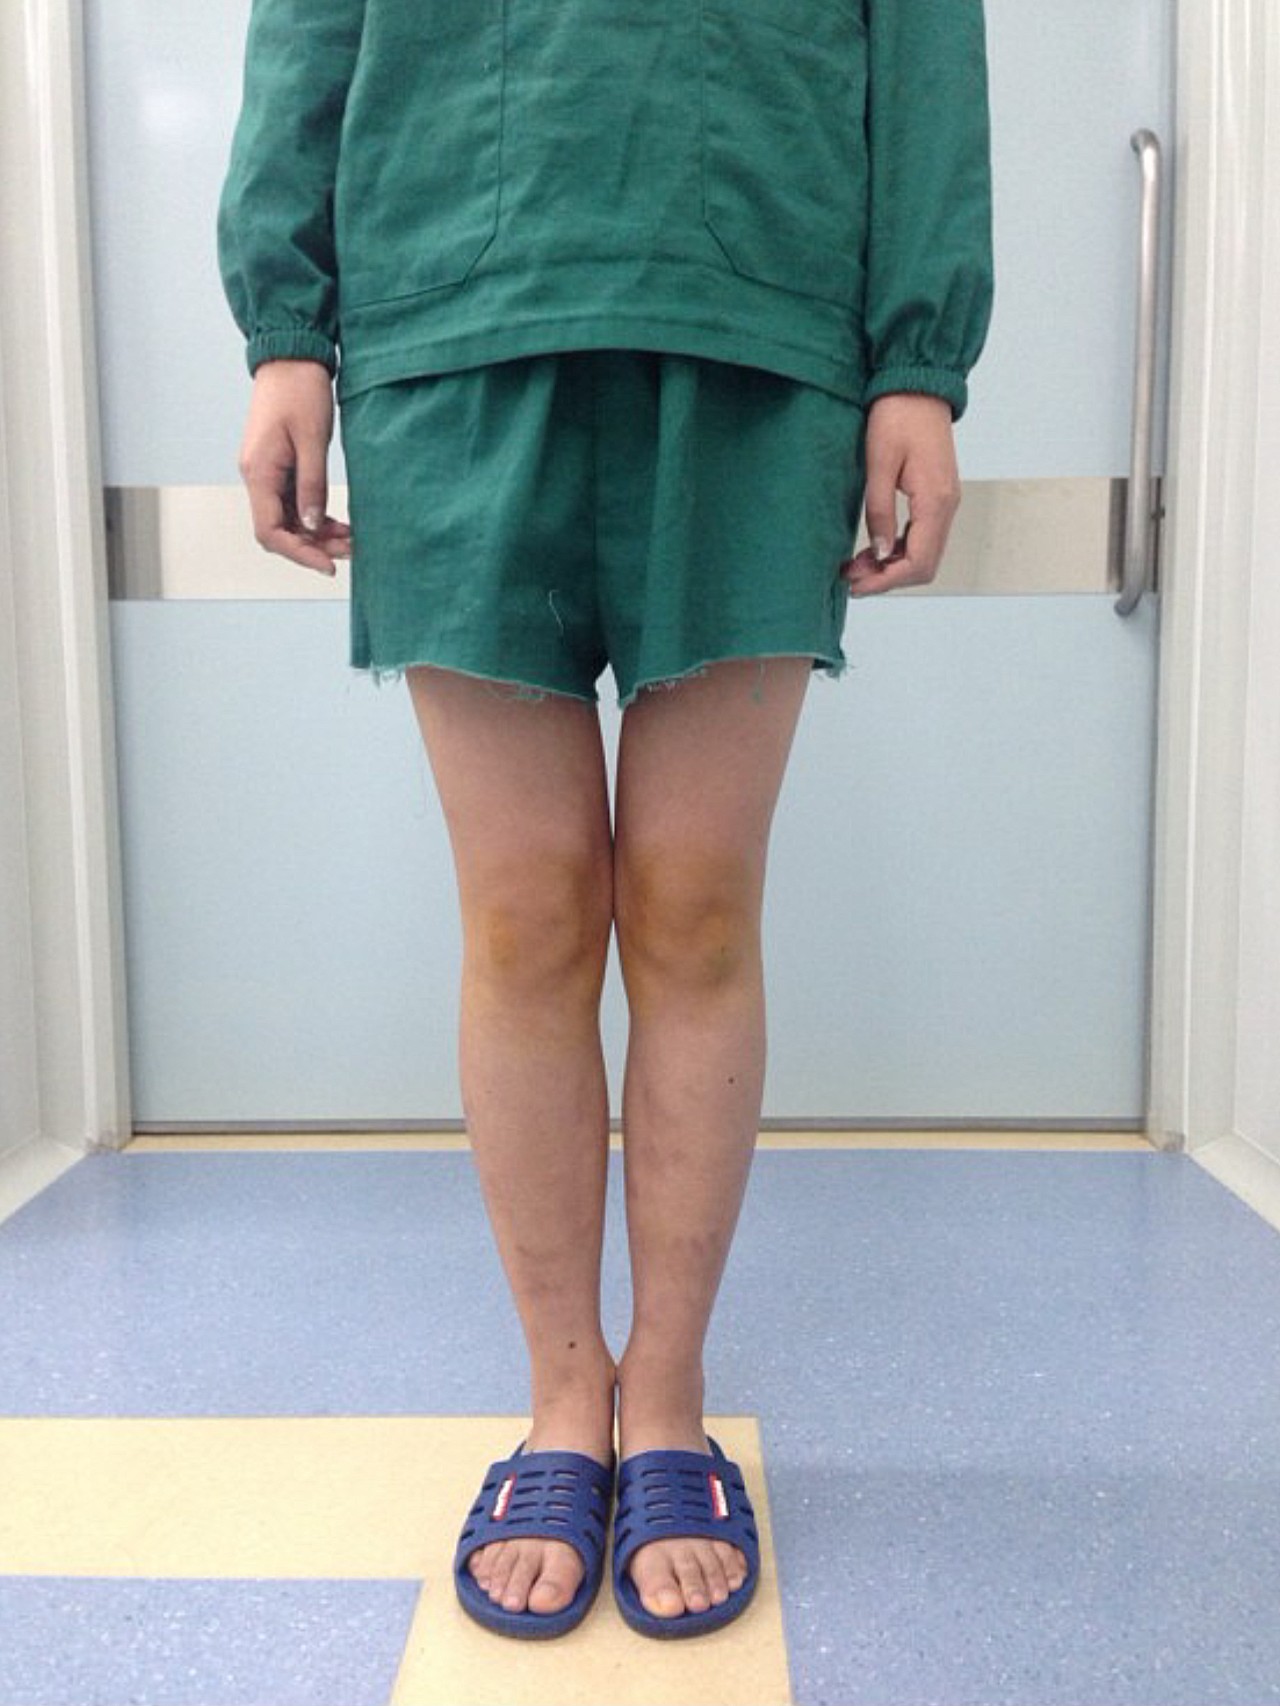 治疗前典型的o型腿,双膝关节内翻畸形,双膝间距大于9cm,腿部外观形态